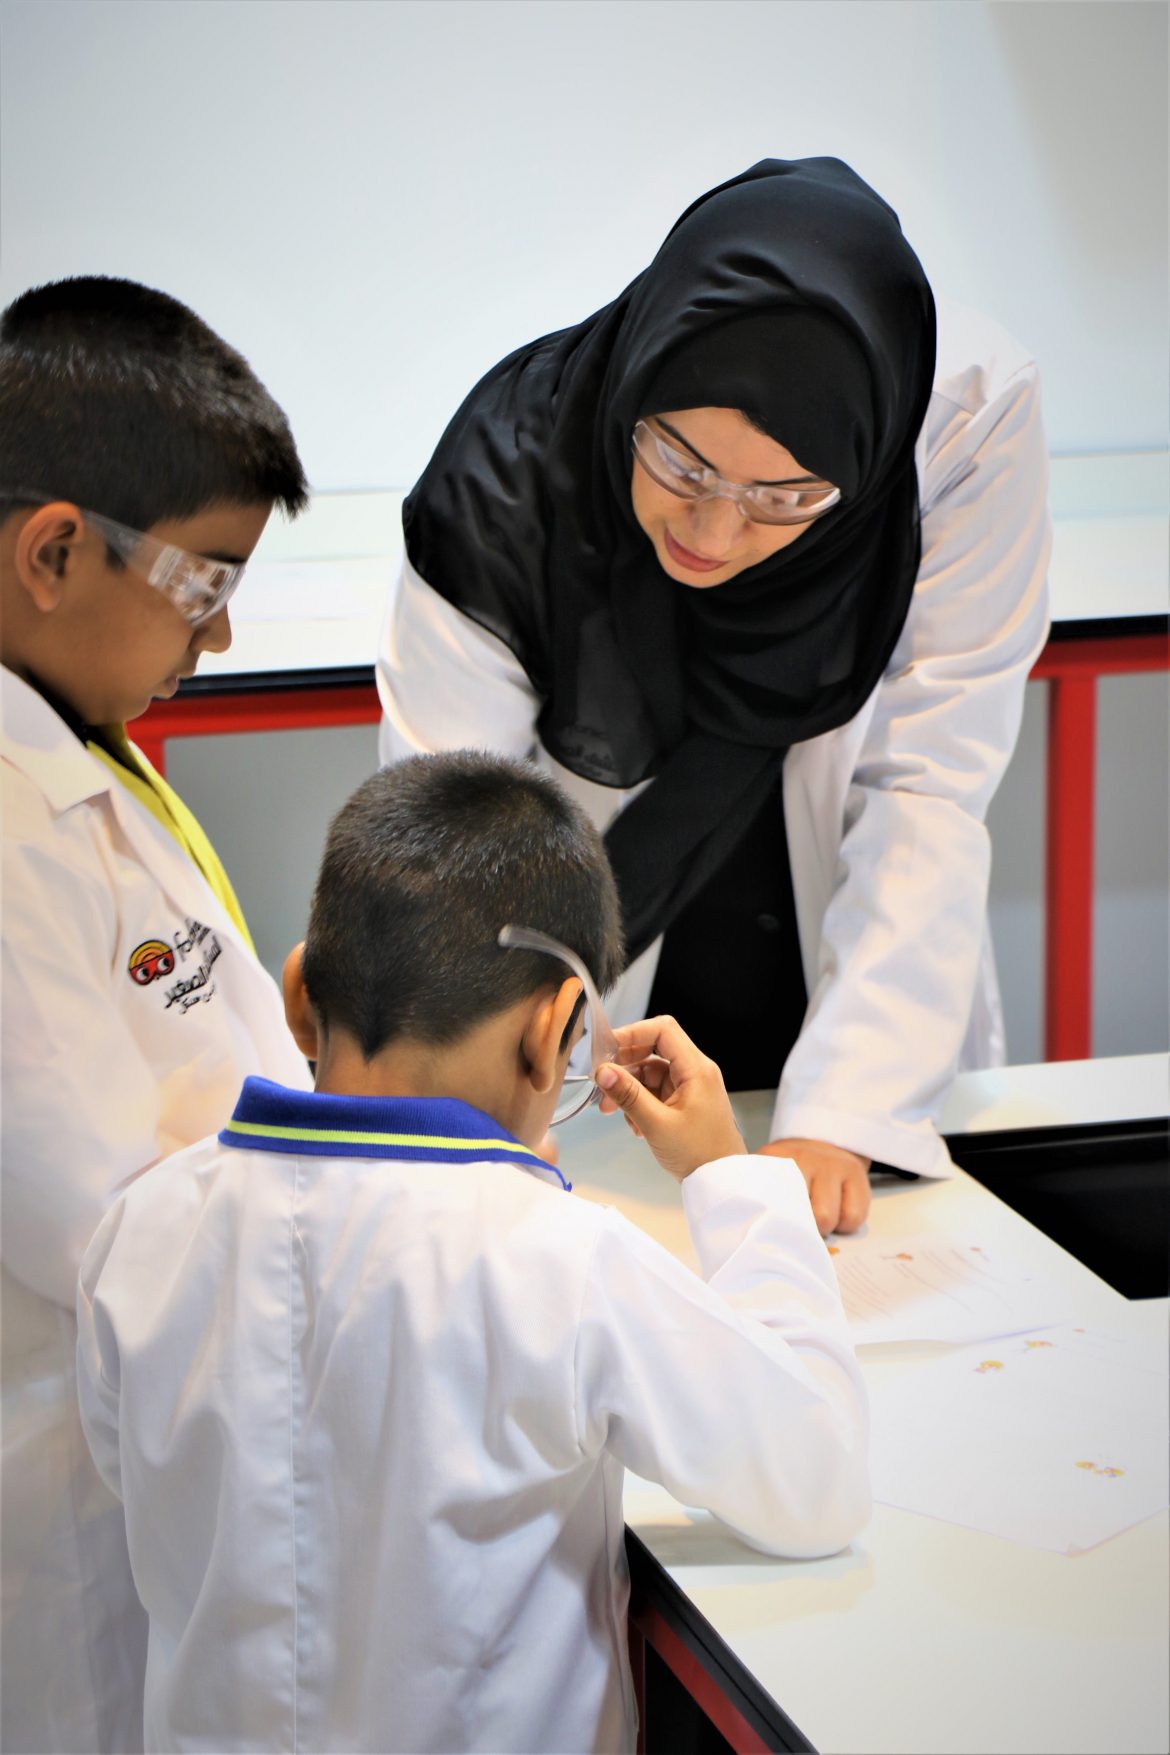 مدينة الطفل دبي تستضيف مختبر علوم فورشرفيلت المستكشف الصغير